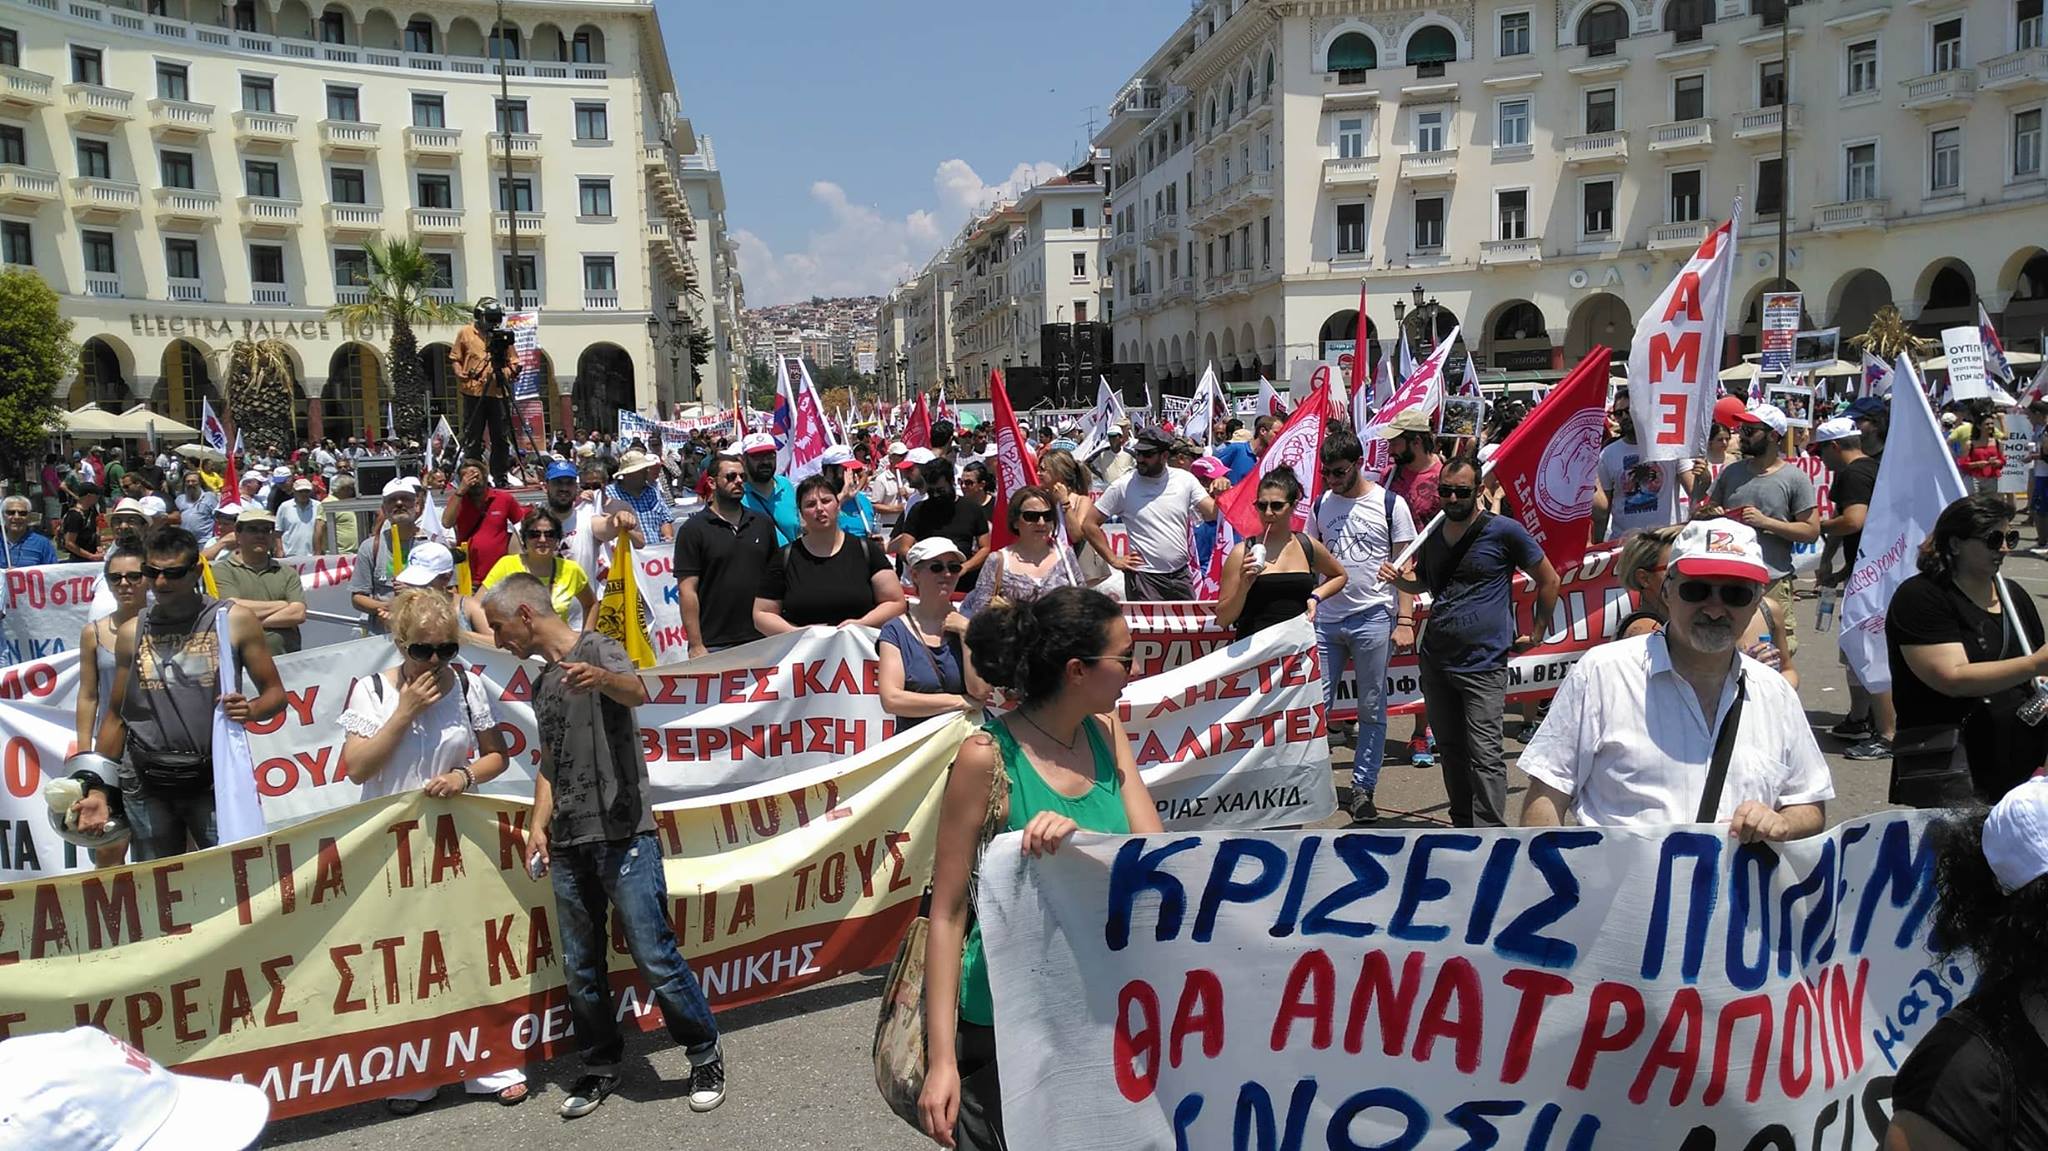 Ανταπόκριση από την μεγάλη αντιιμπεριαλιστική διαδήλωση - πορεία του ΠΑΜΕ στη Θεσσαλονίκη (Φωτογραφίες)